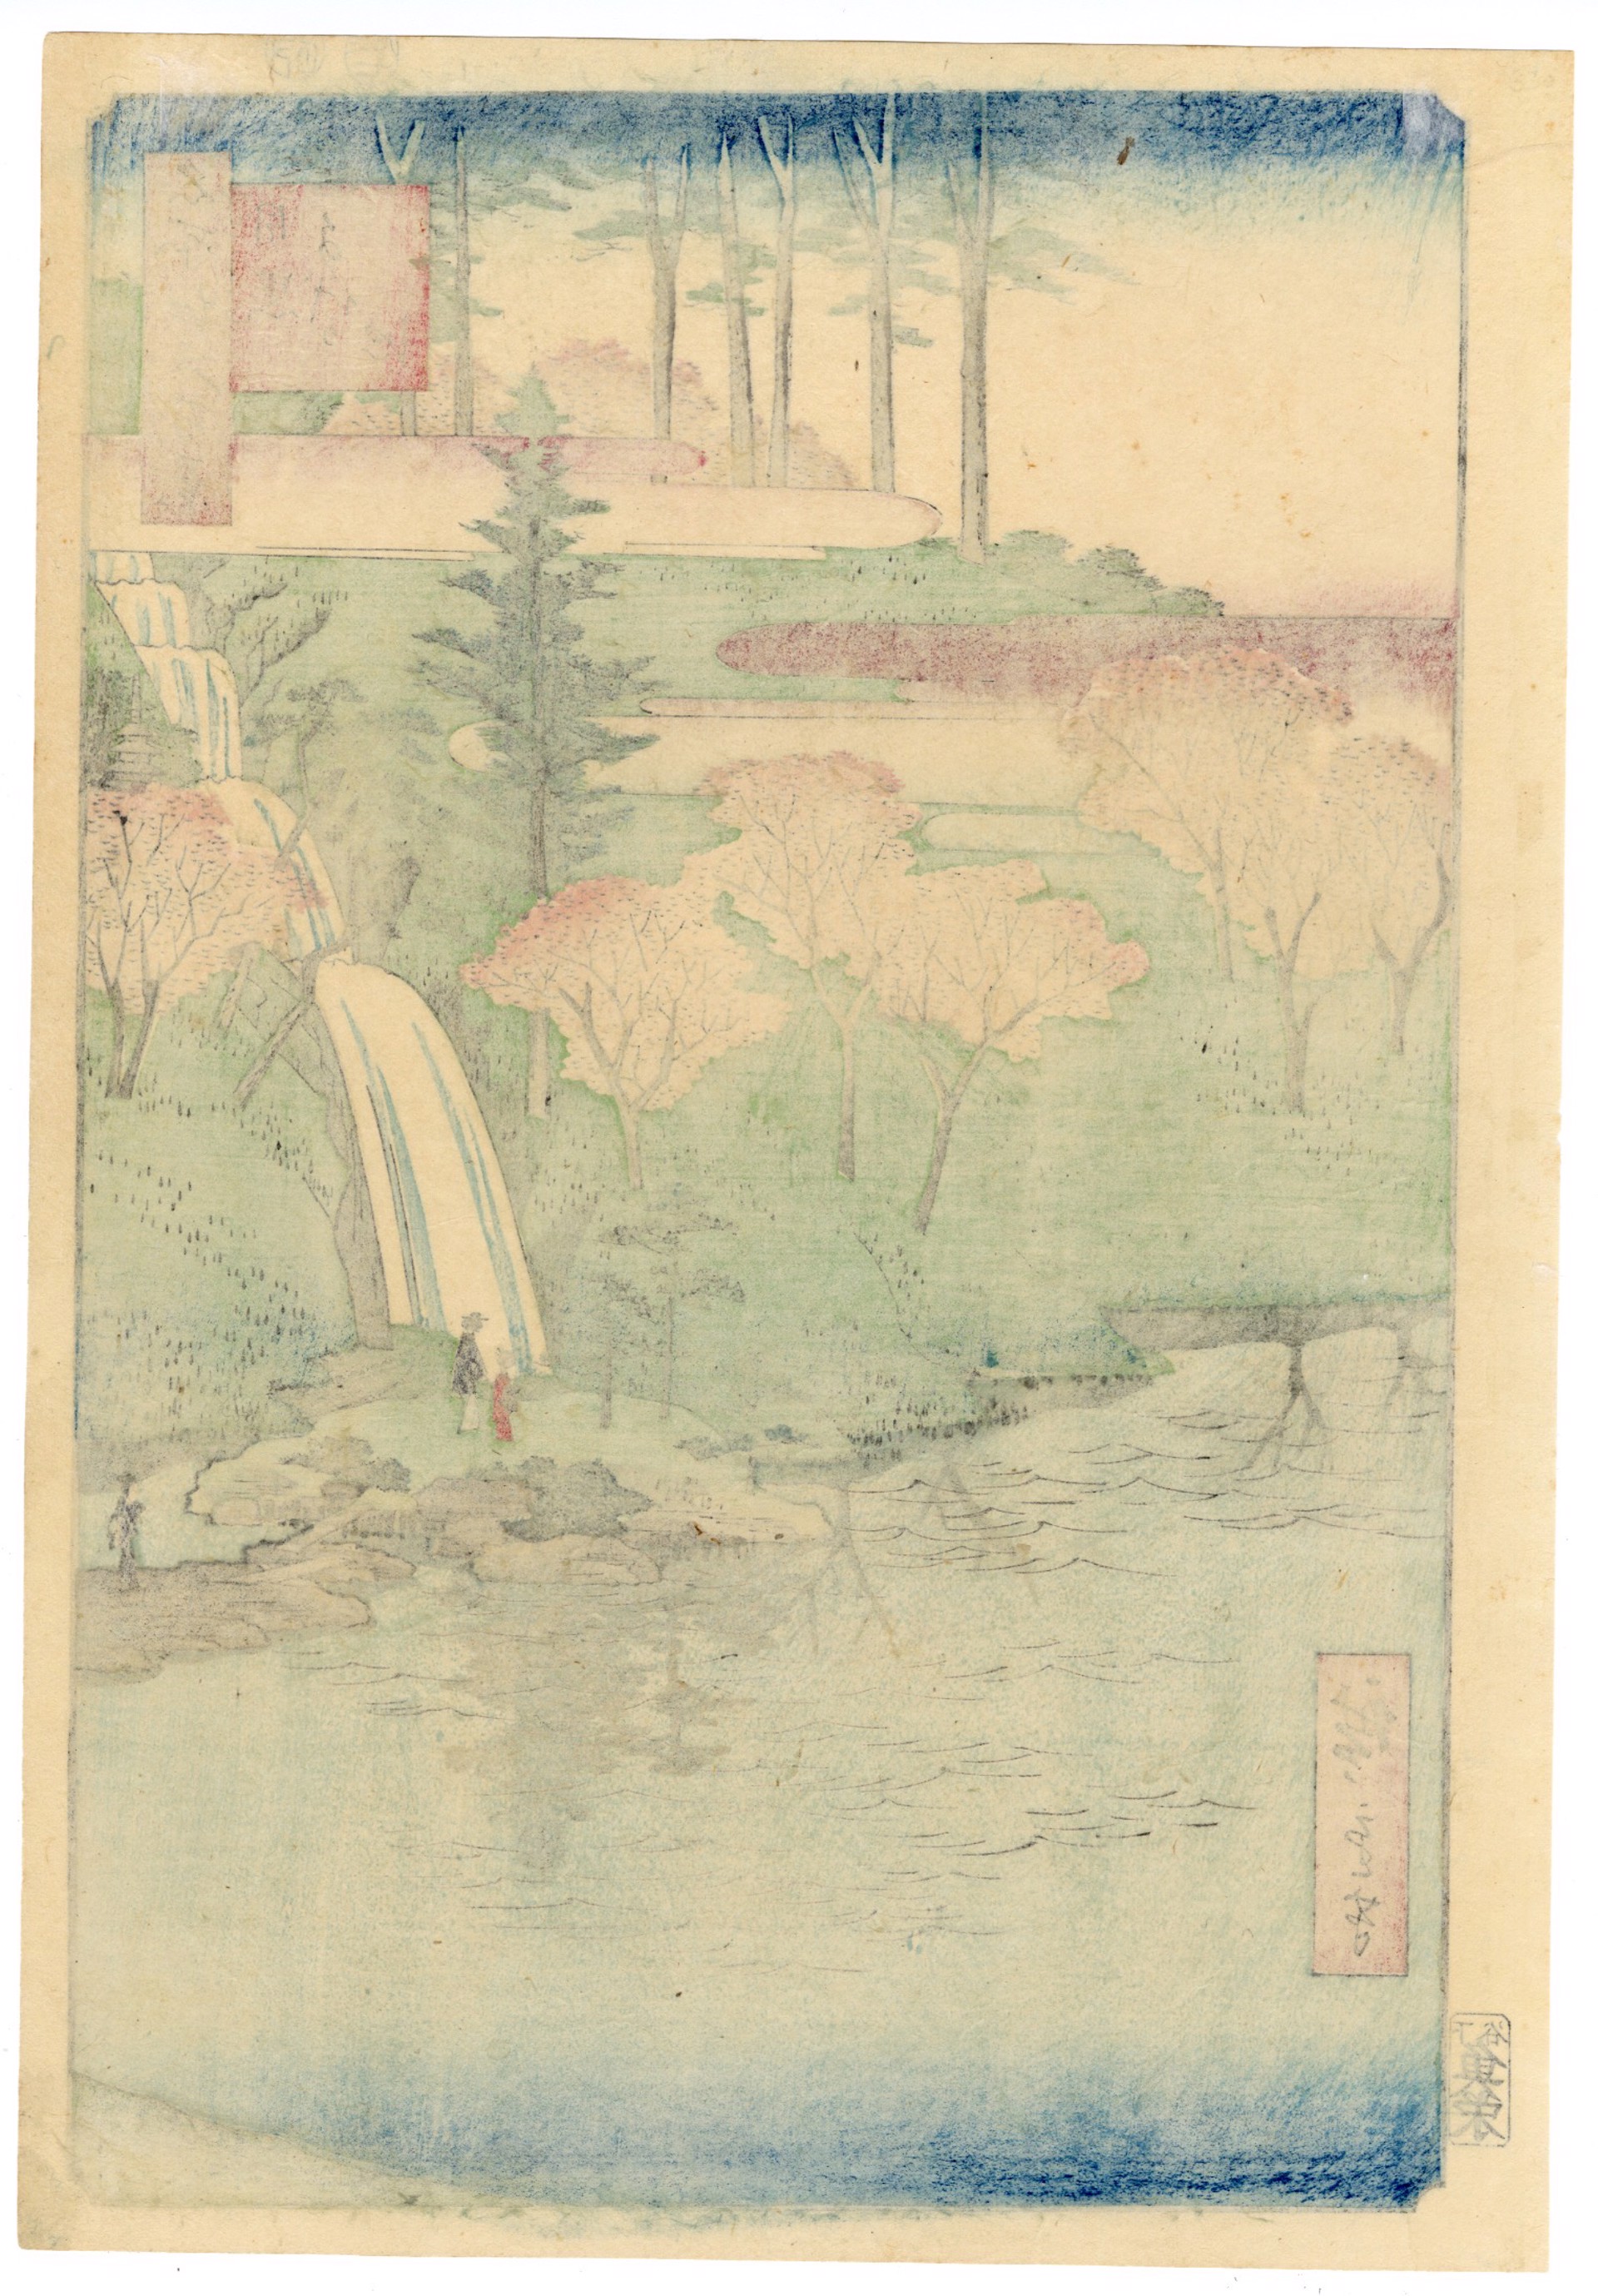 Chiyo Pond at Meguro by Hiroshige